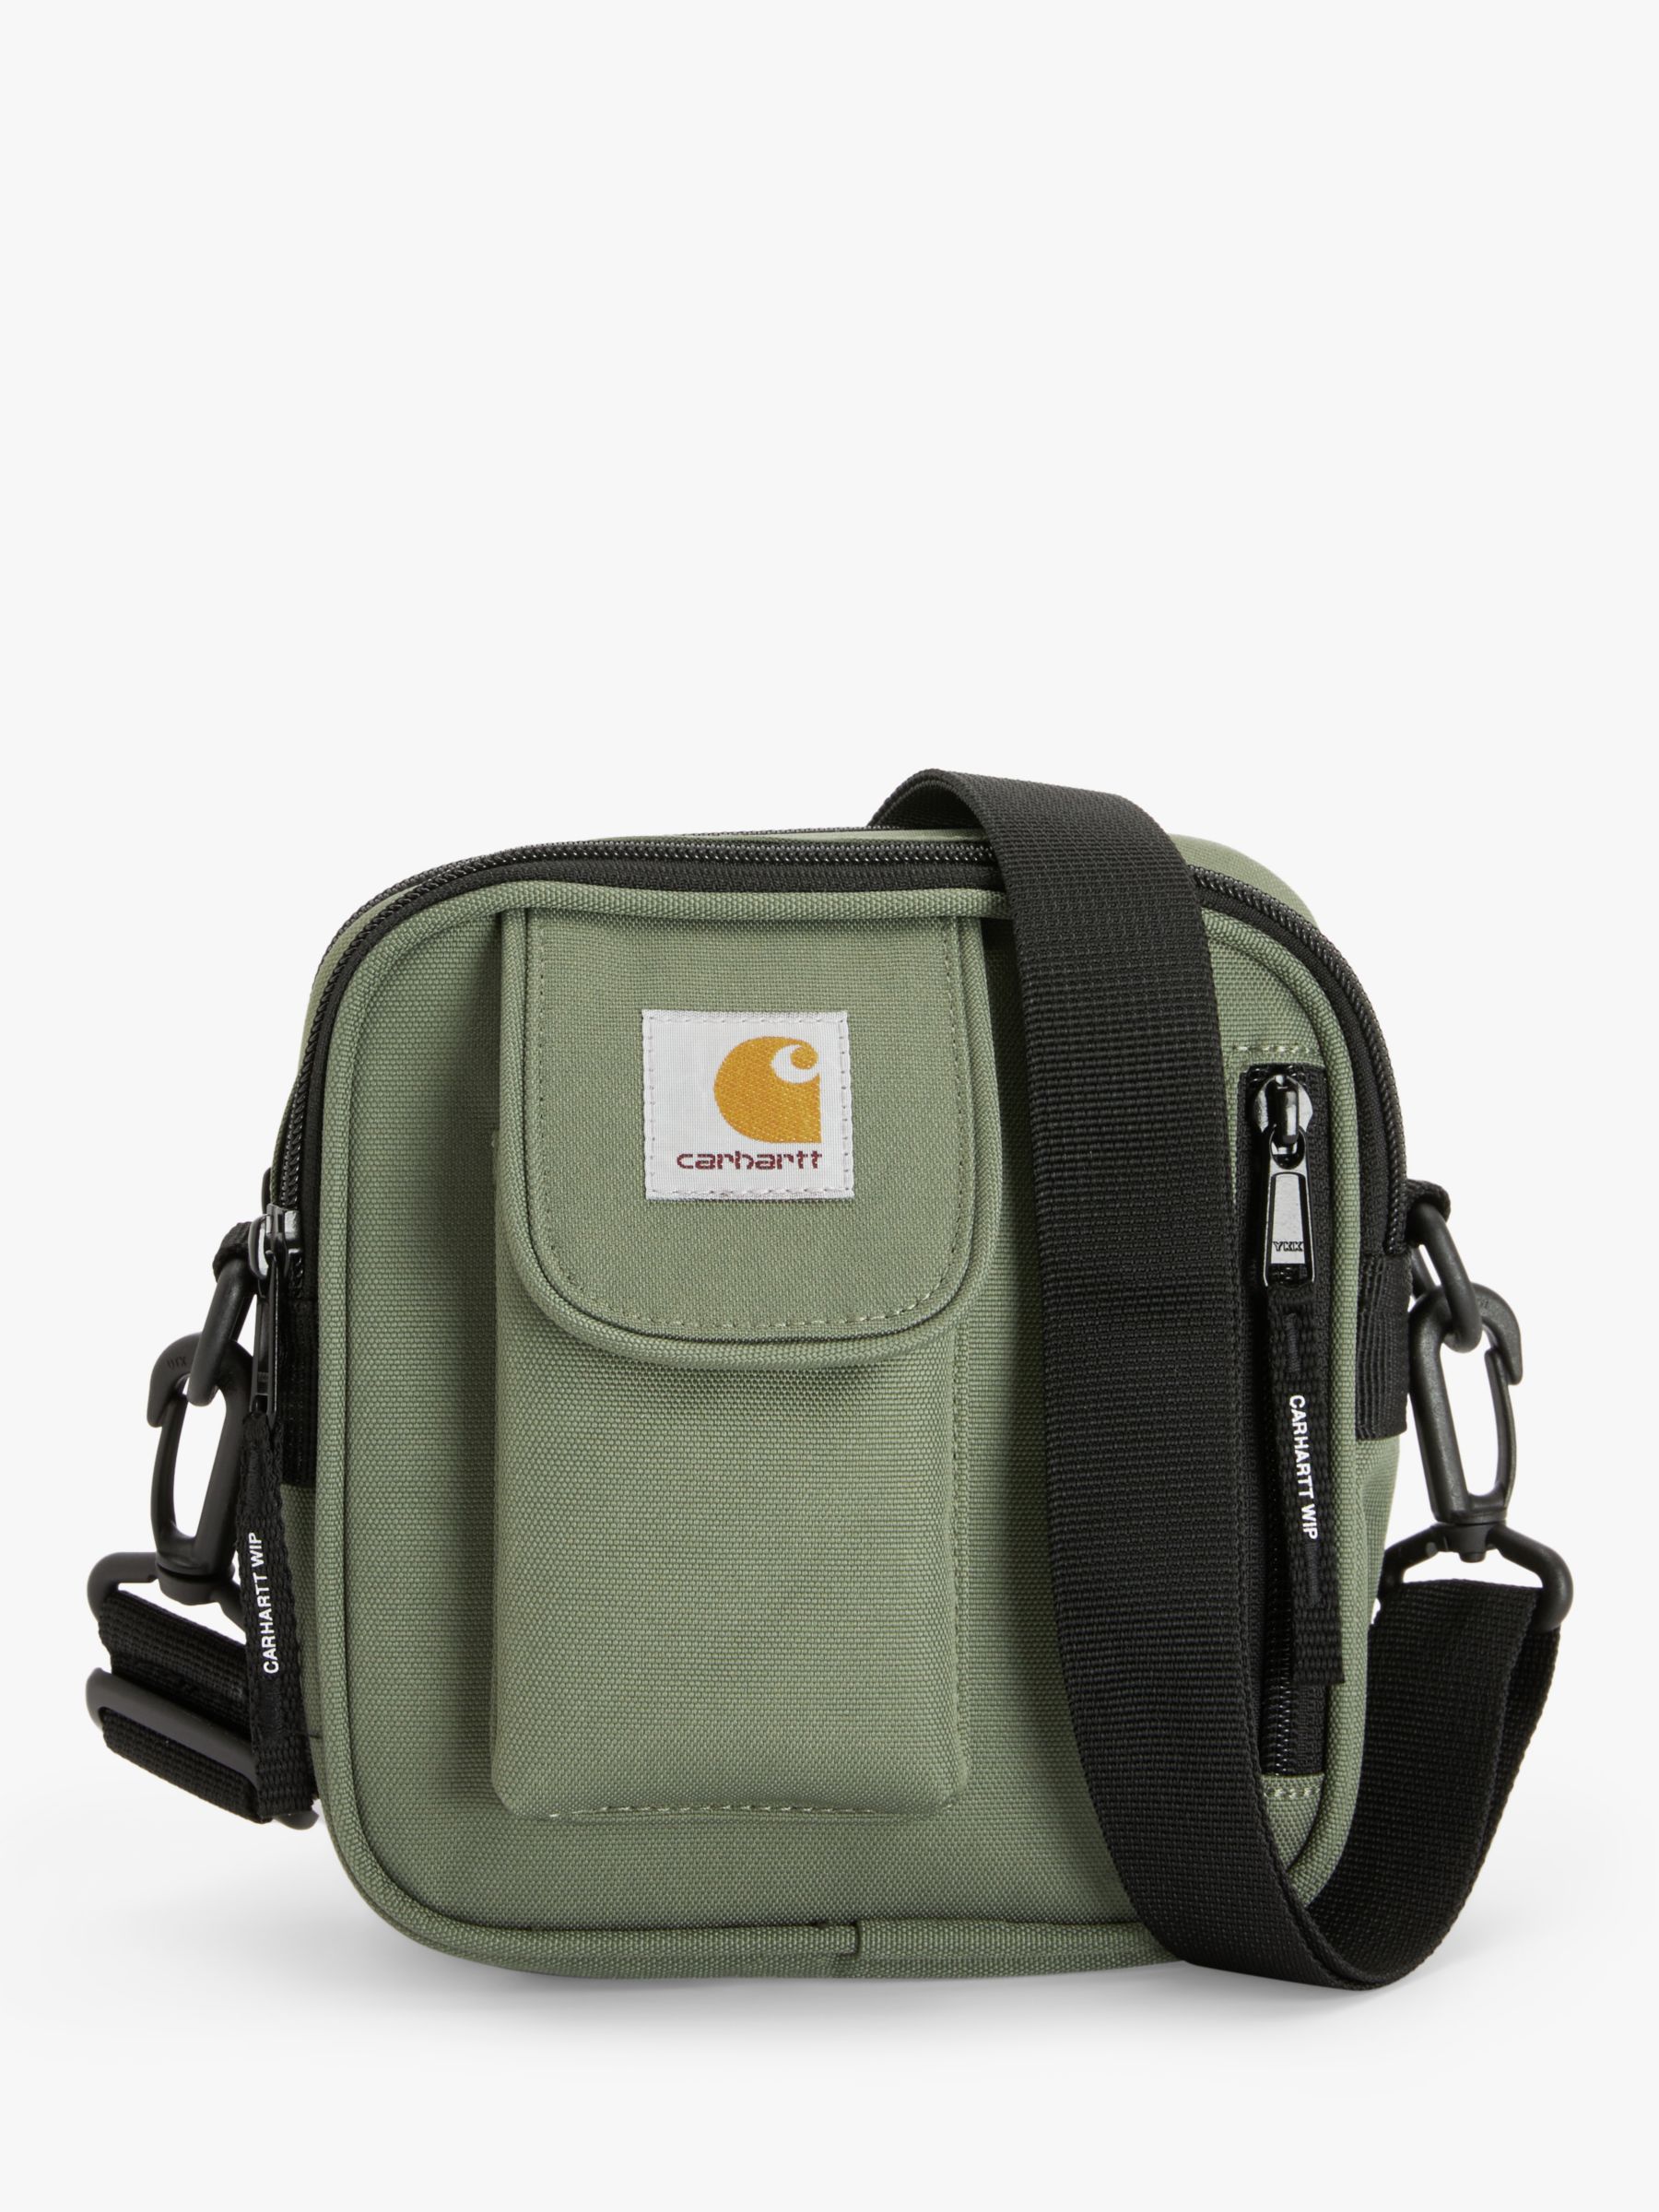 Carhartt Messenger Bag